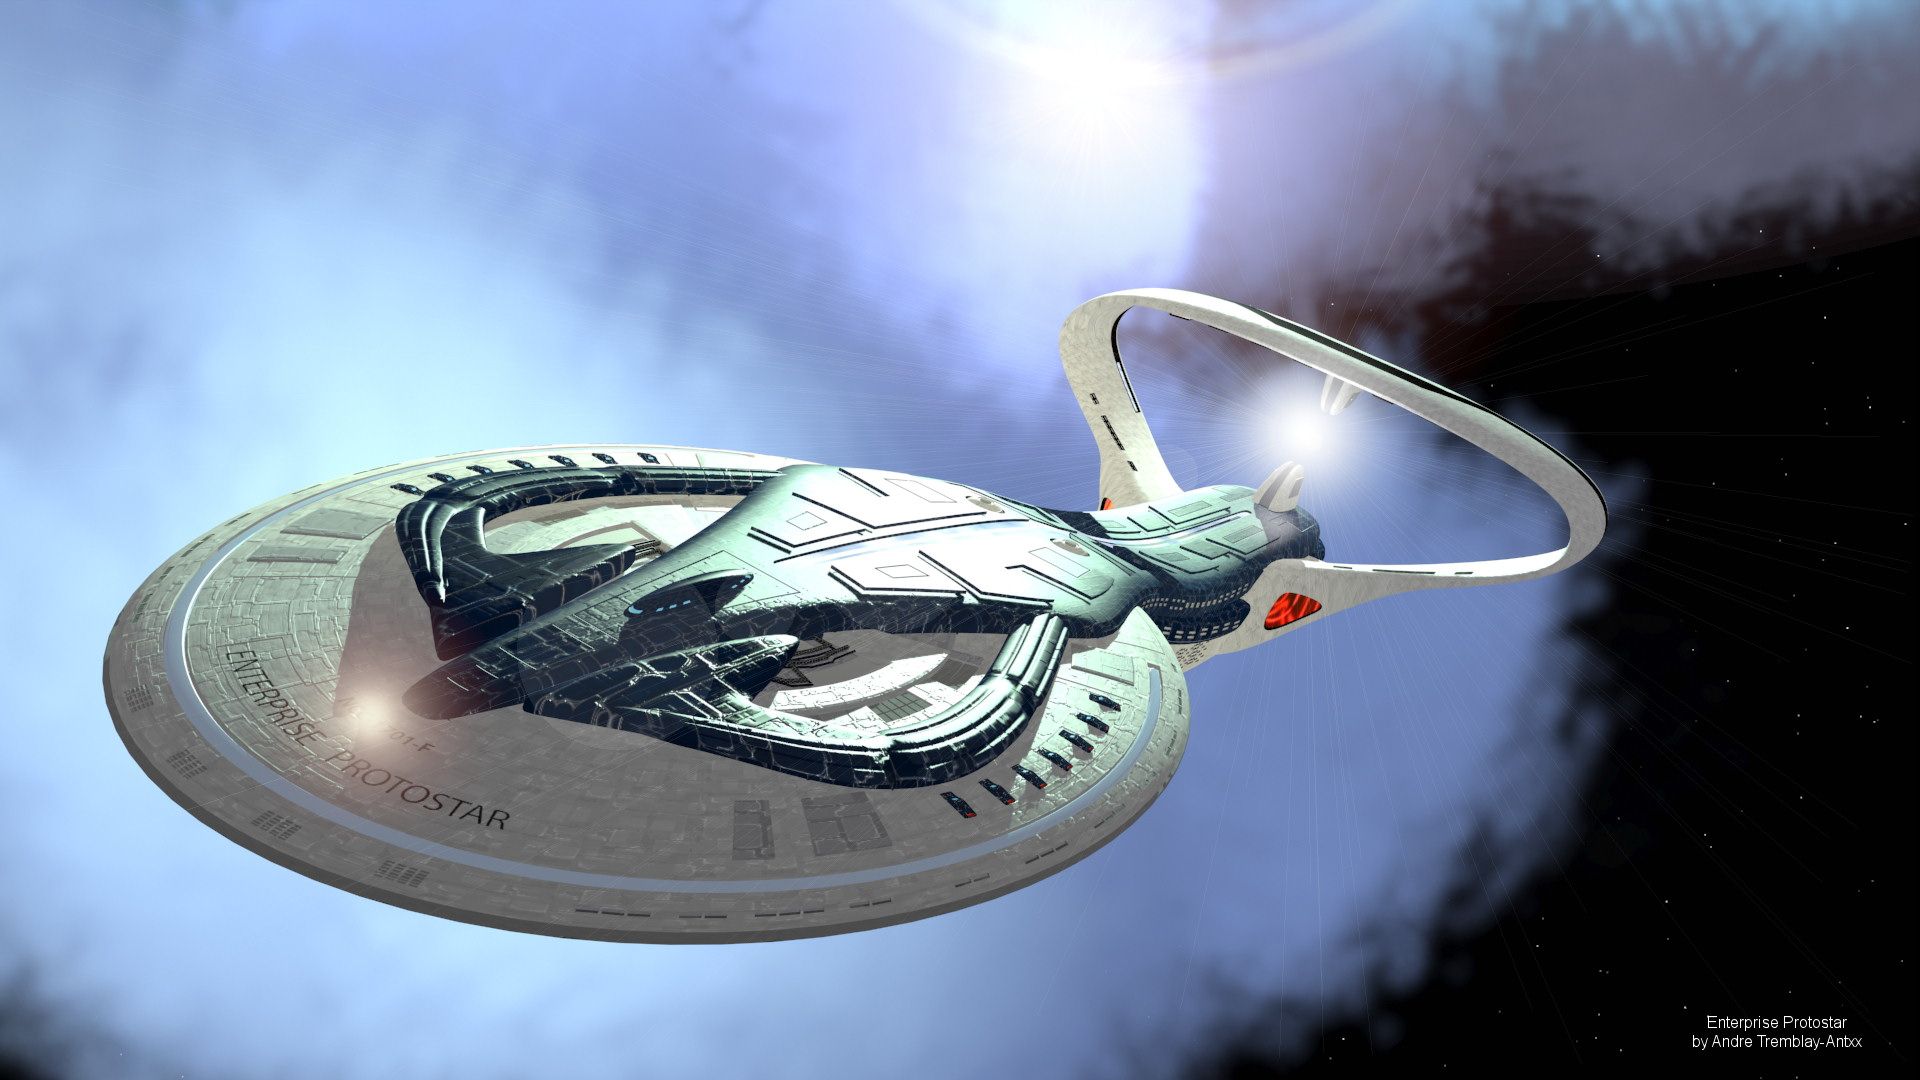 Star Trek Enterprise Protostar Wallpaper